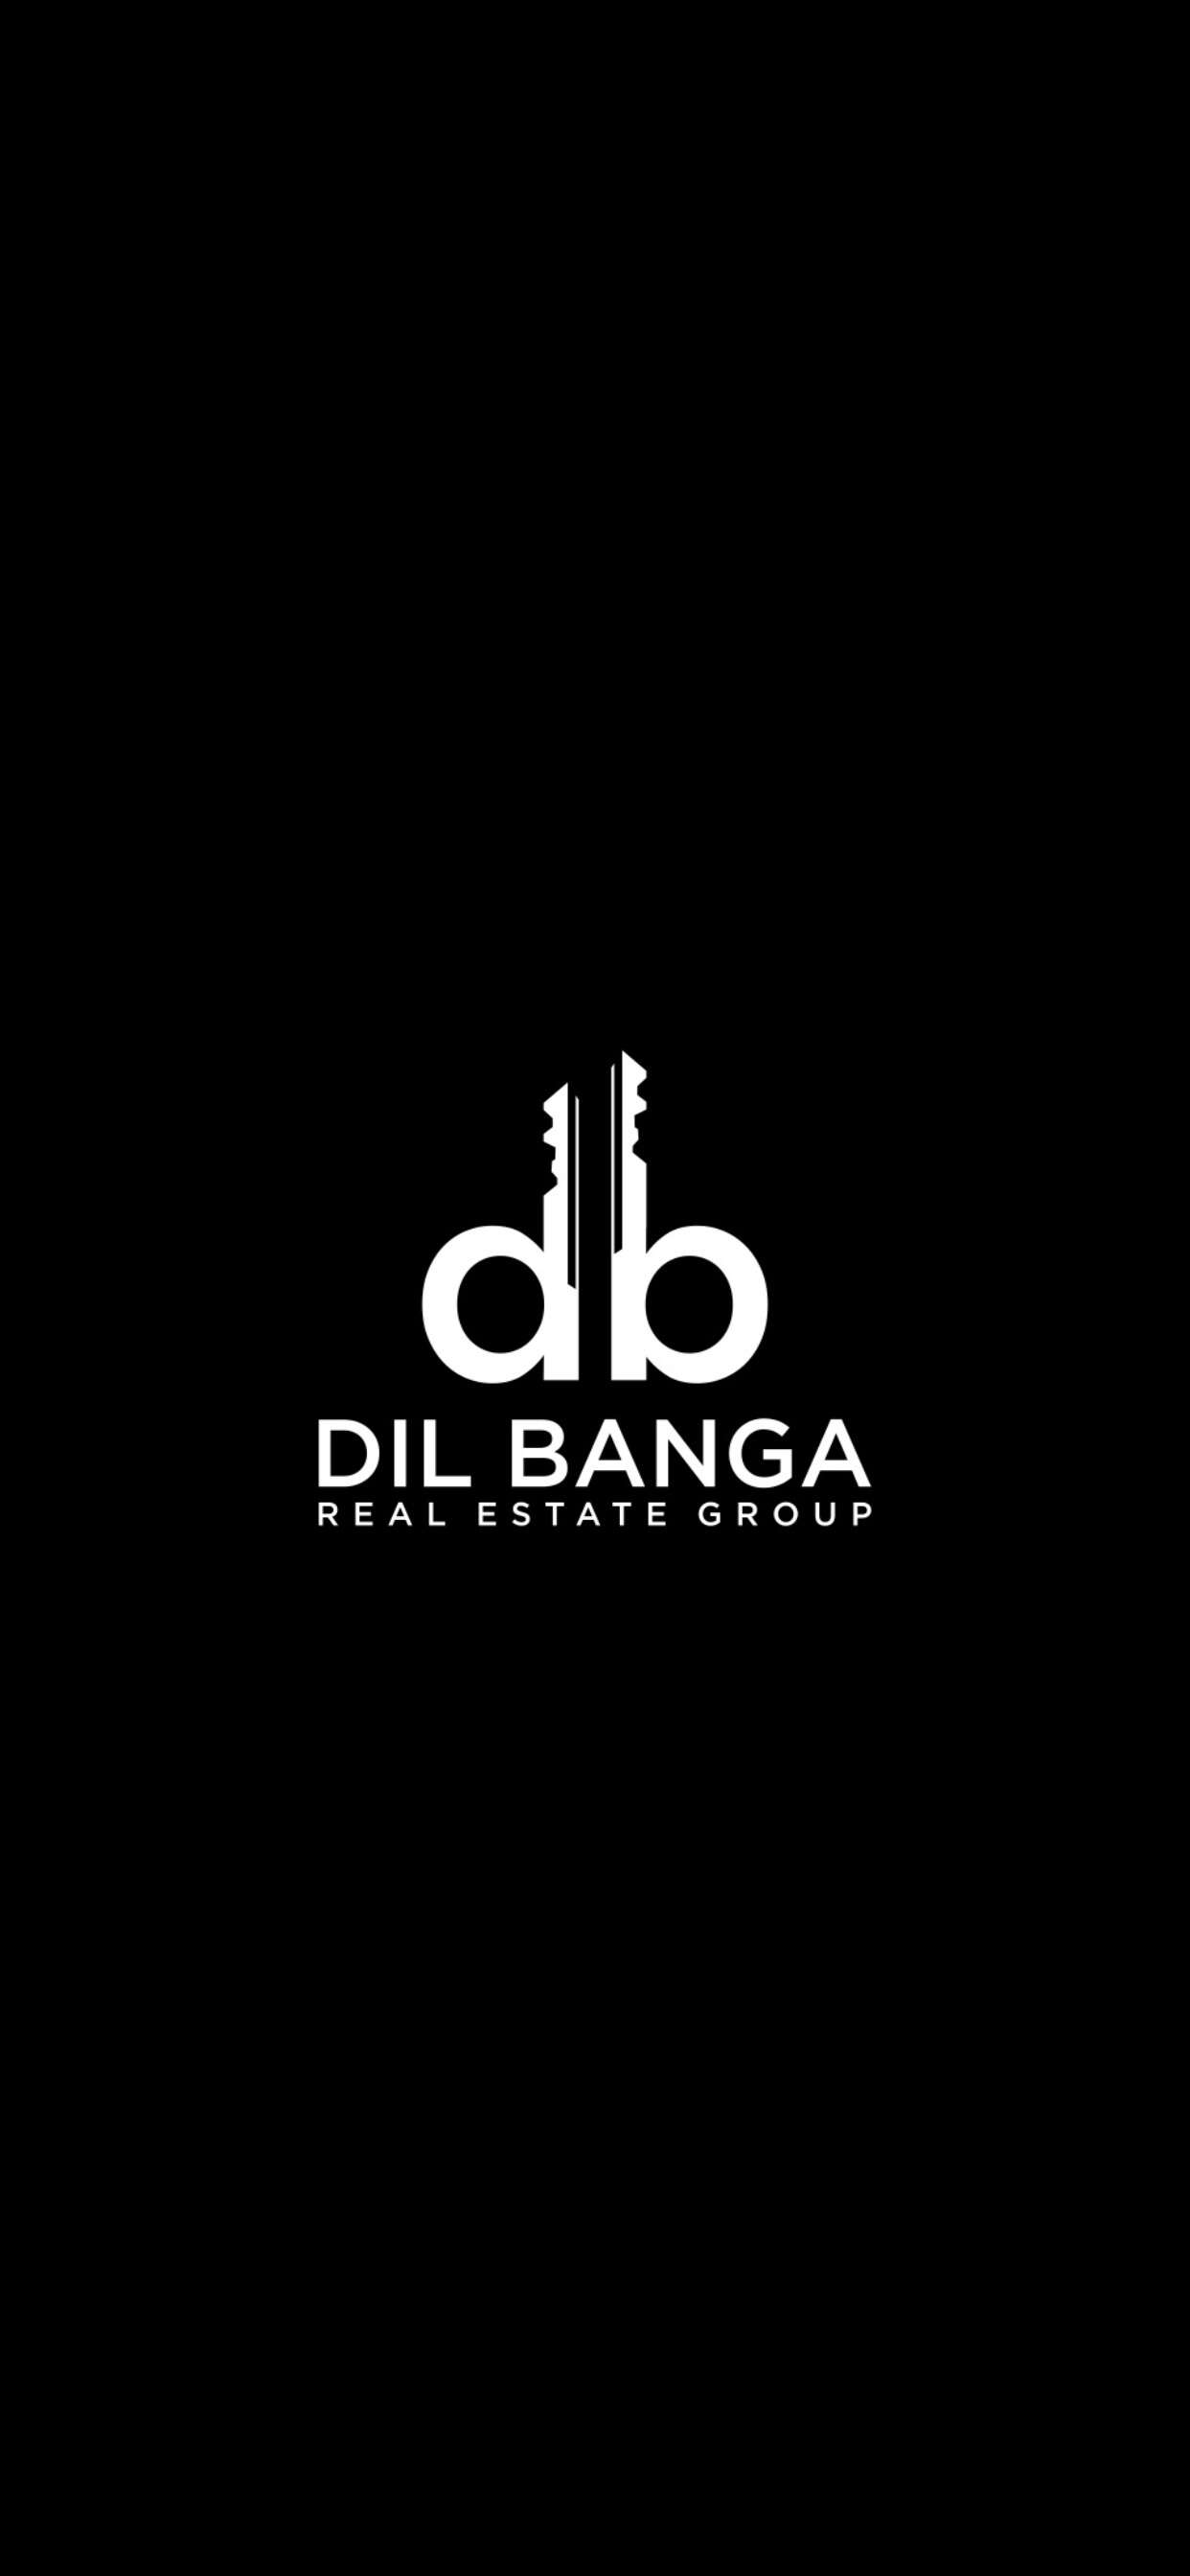 Dil Banga Real Estate Group